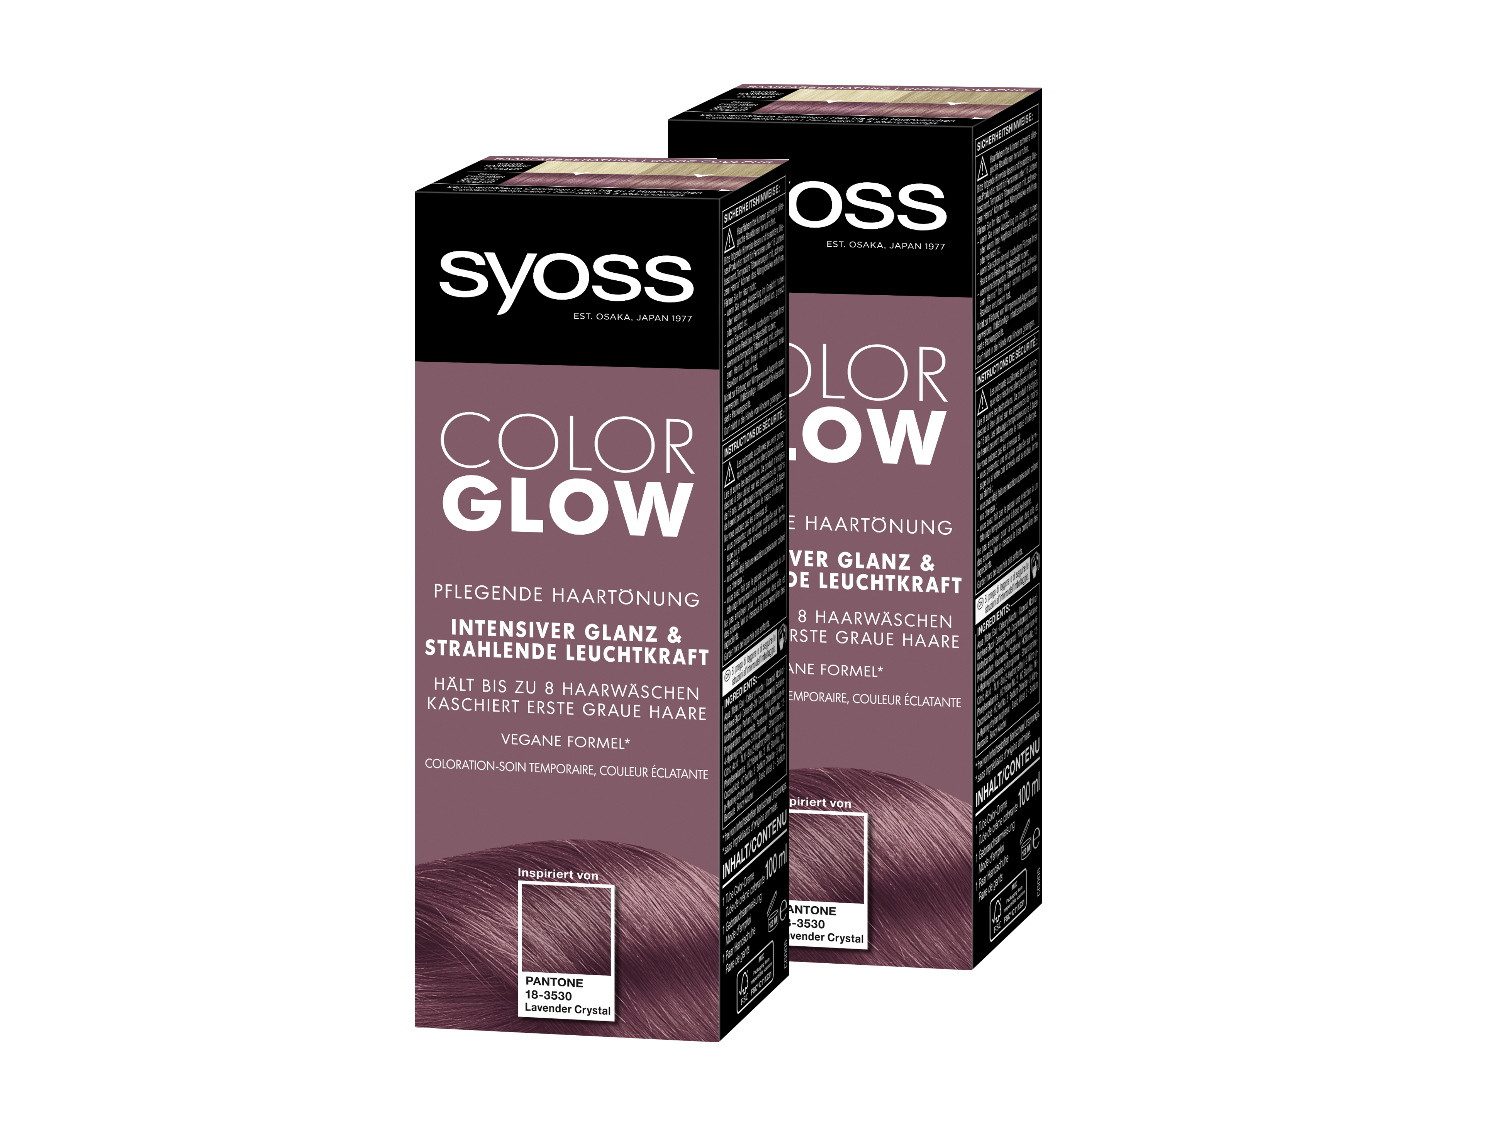 Syoss Haartönung Color Glow Pflegend - Lavender Crystal Pantone 18-3530, 2-tlg., 2x 100 ml, für strahlende Farbintensität bis zu 8 Haarwäschen